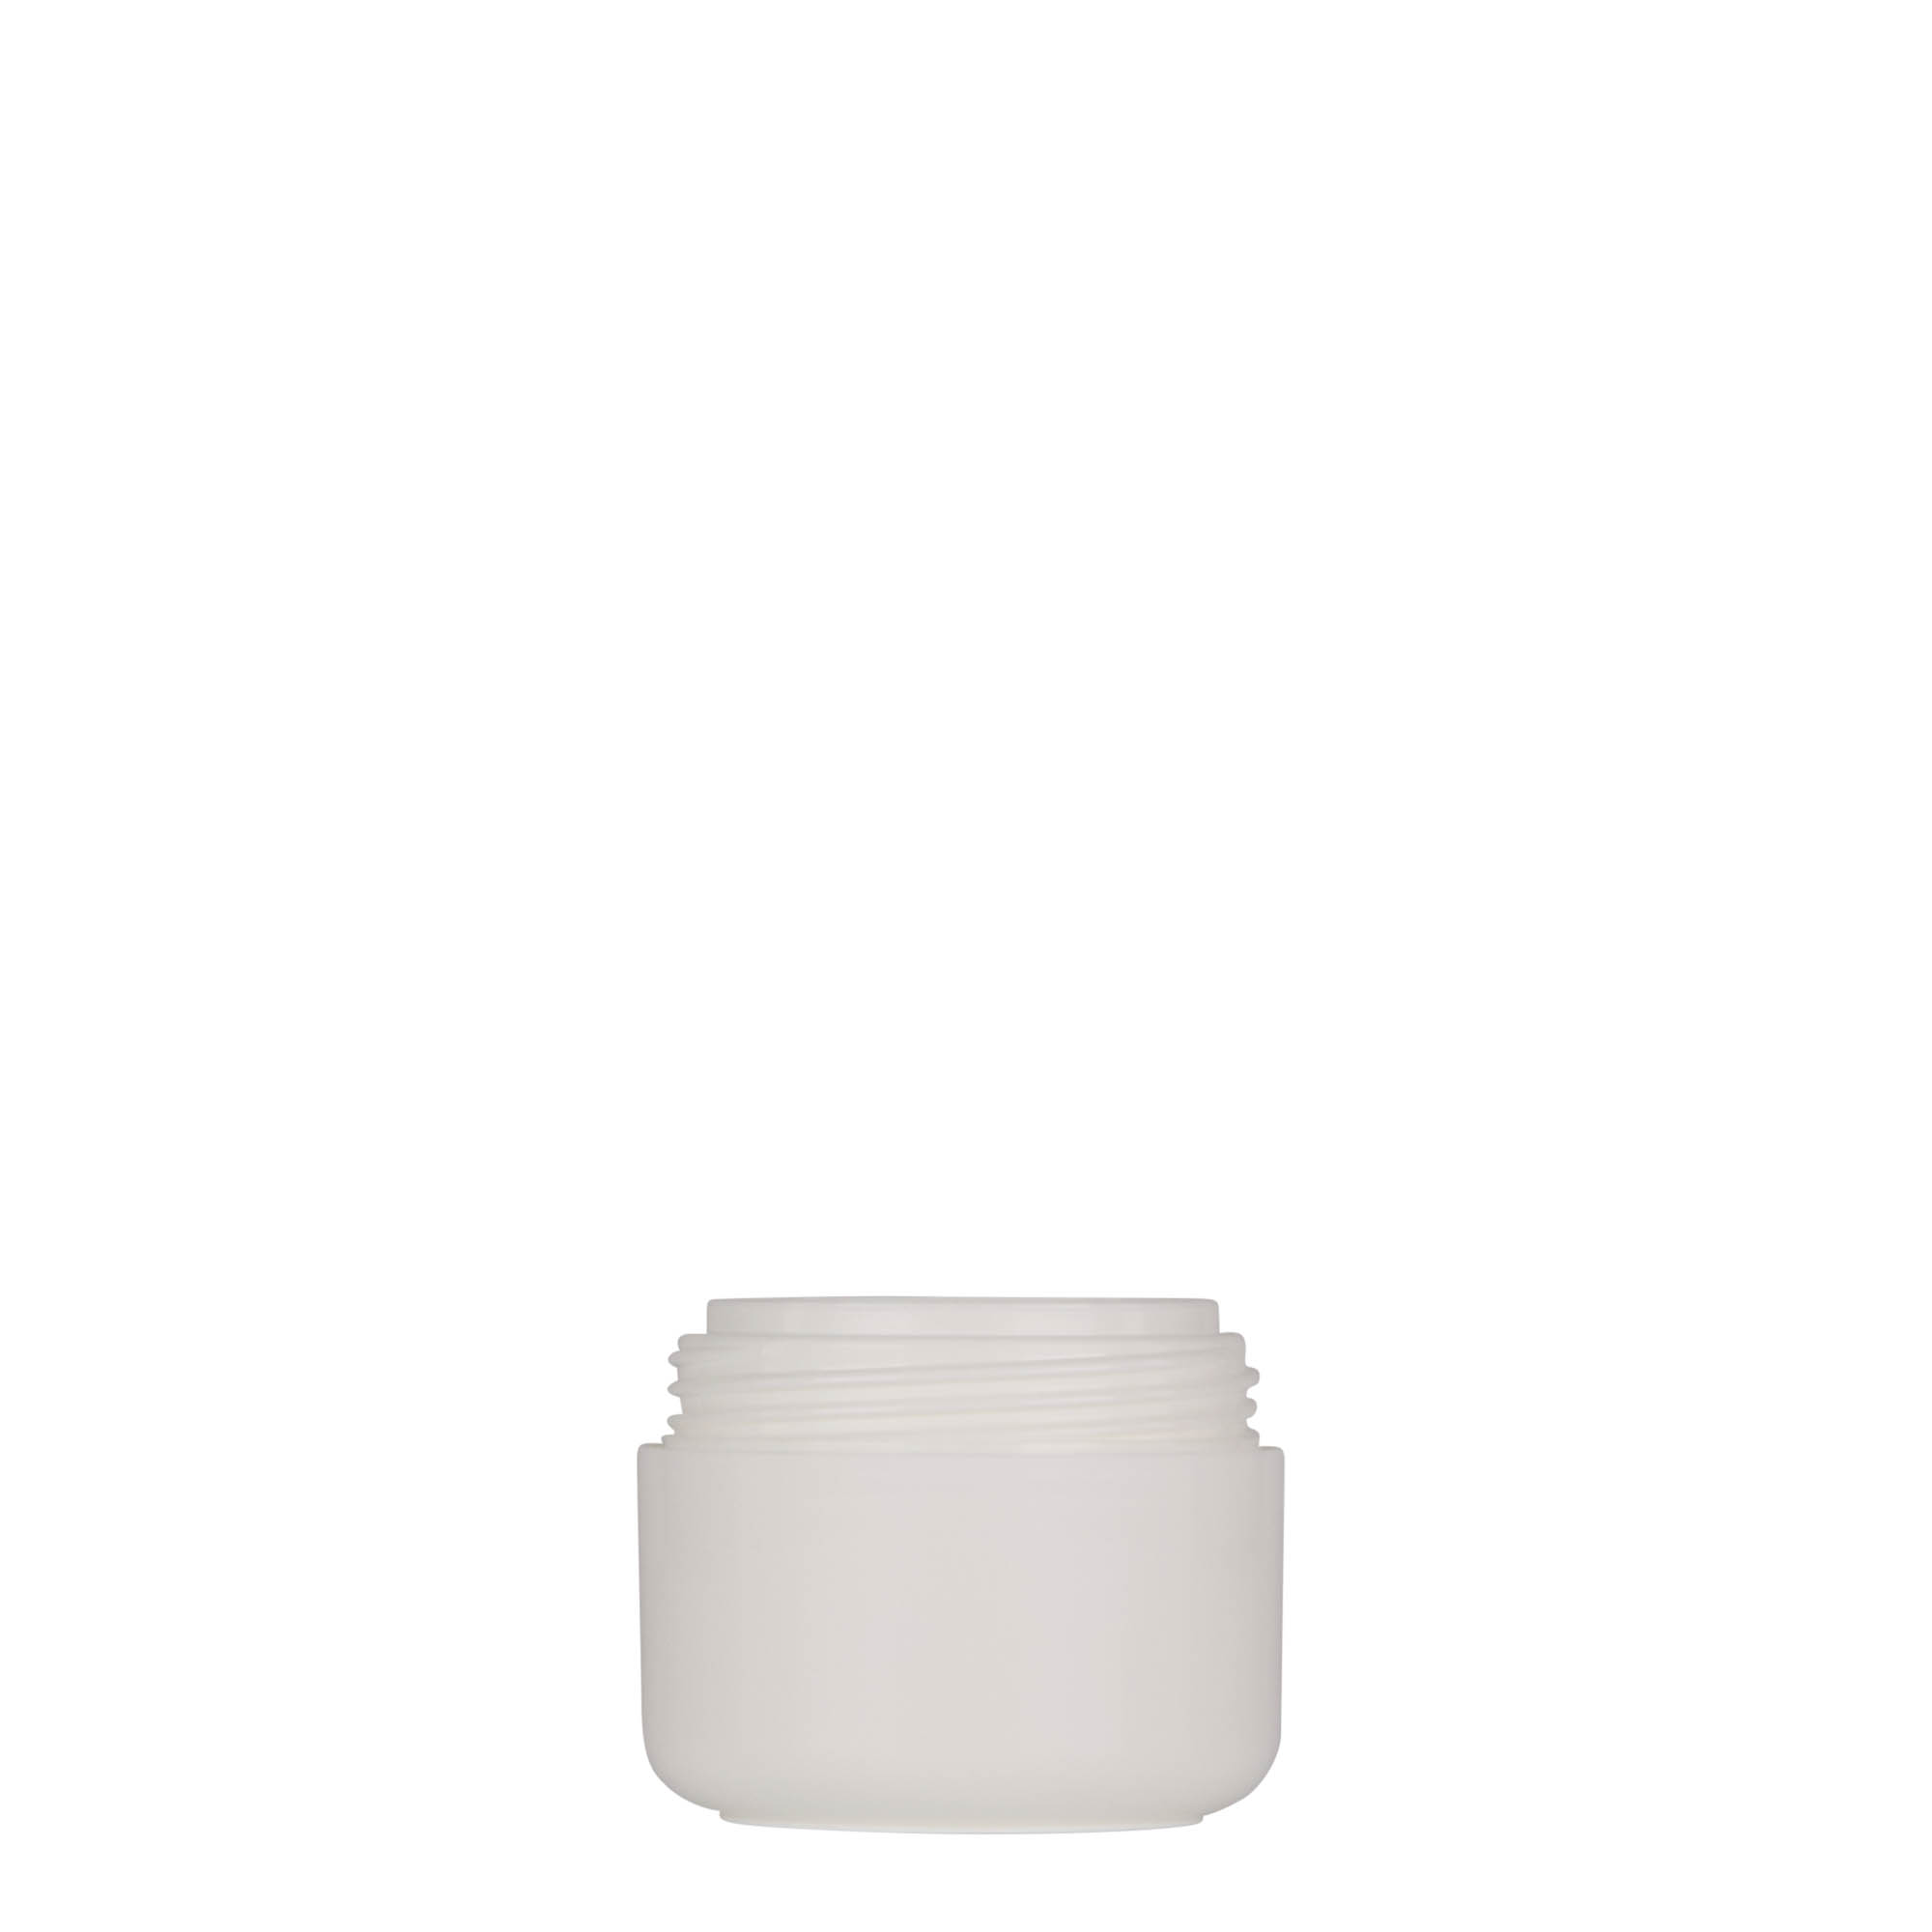 30 ml plastic jar 'Bianca', PP, white, closure: screw cap